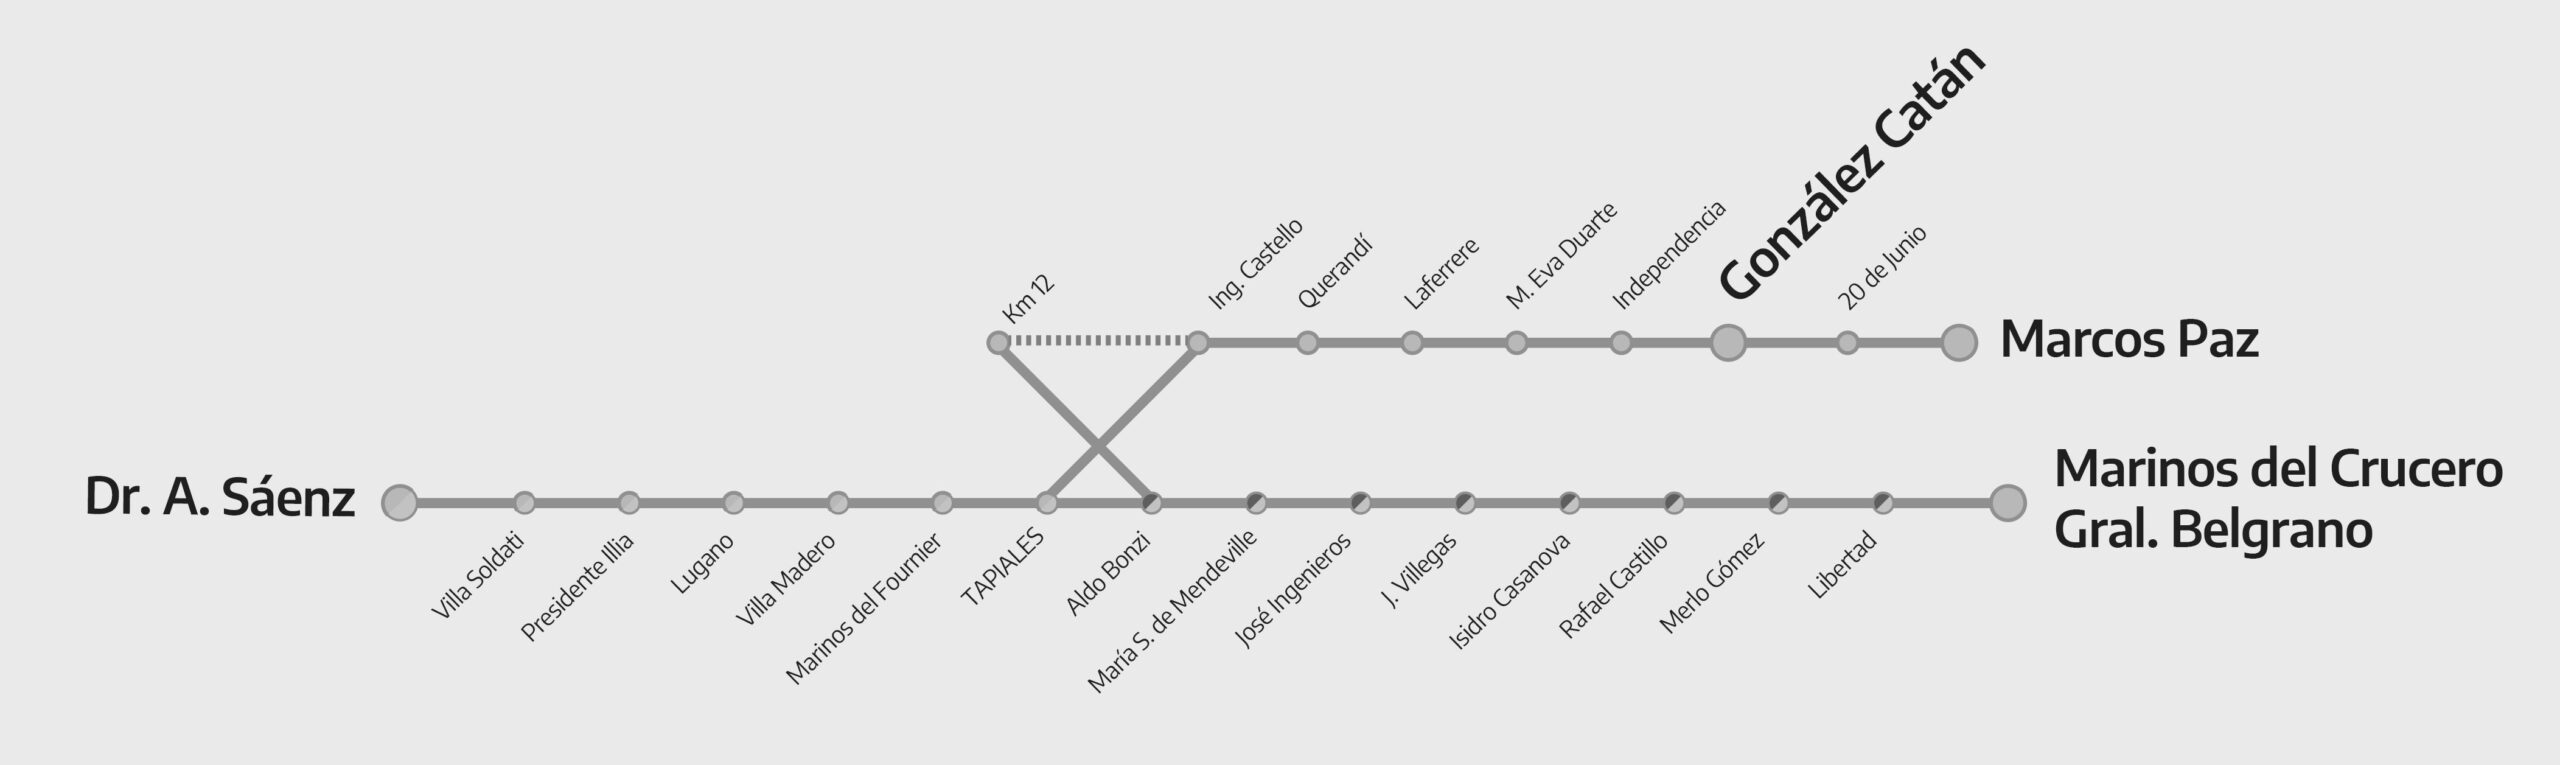 mapa belgrano sur trenes